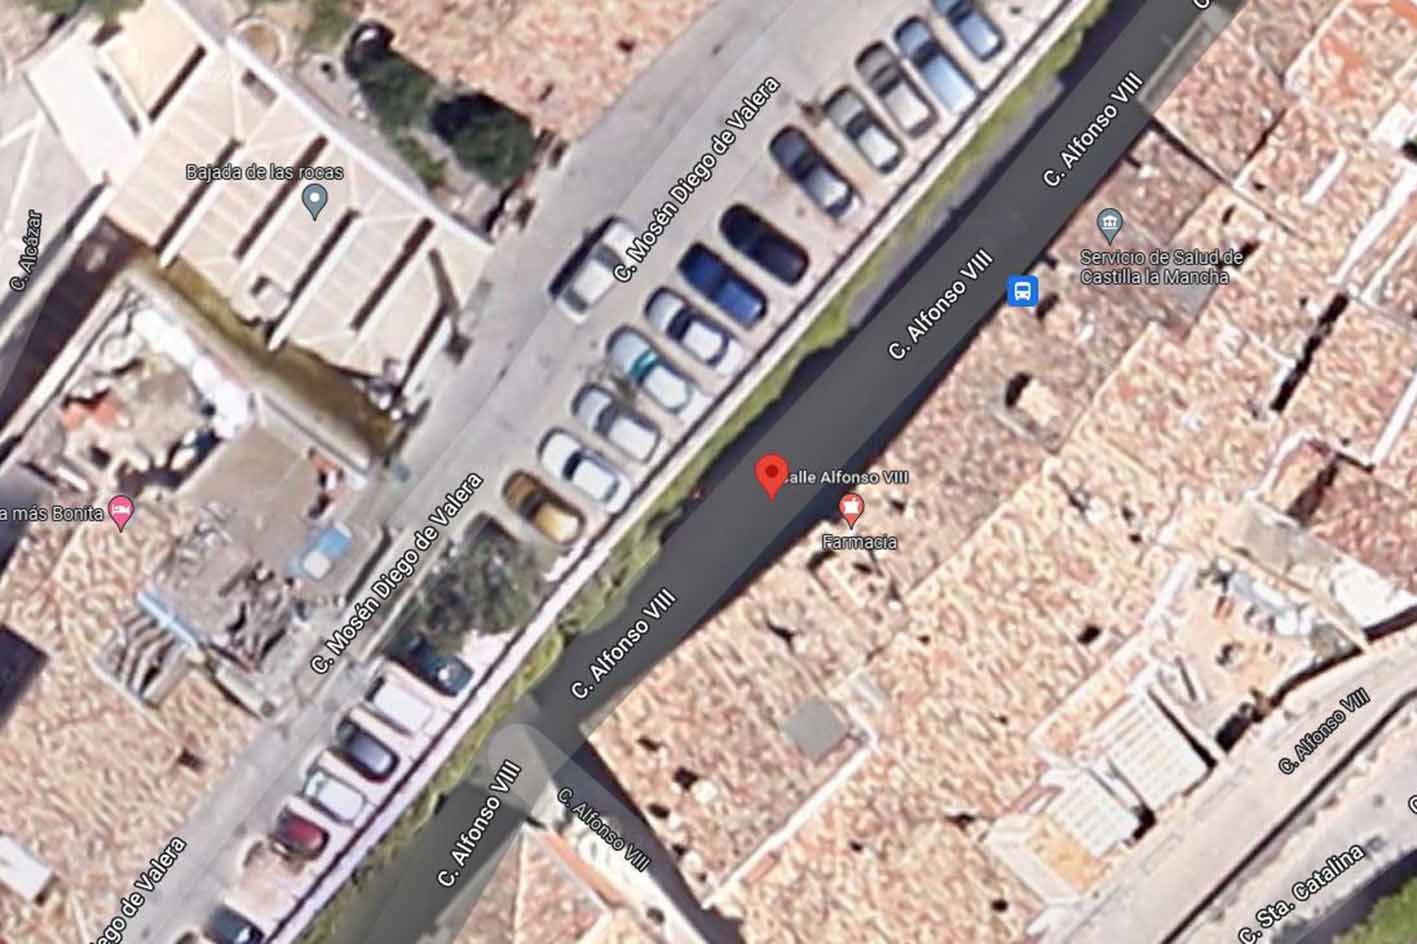 Calle Alfonso VIII de Cuenca, donde una moto con dos ocupantes arrollaba a cuatro personas.